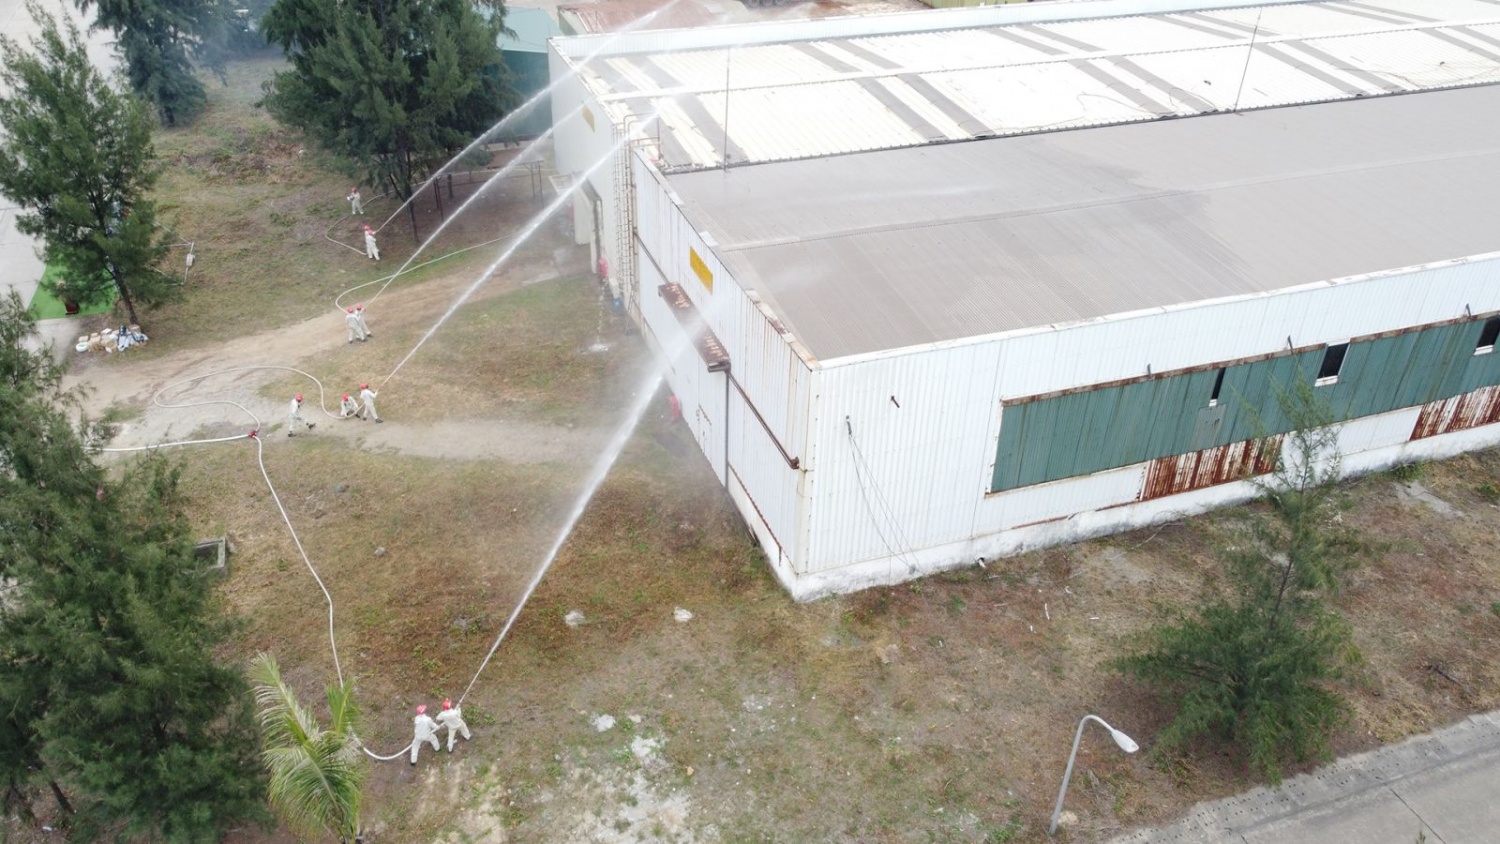 Đội PCCC cơ sở DQS tiếp cận đám cháy và sử dụng nước để dập tắt đám cháy.